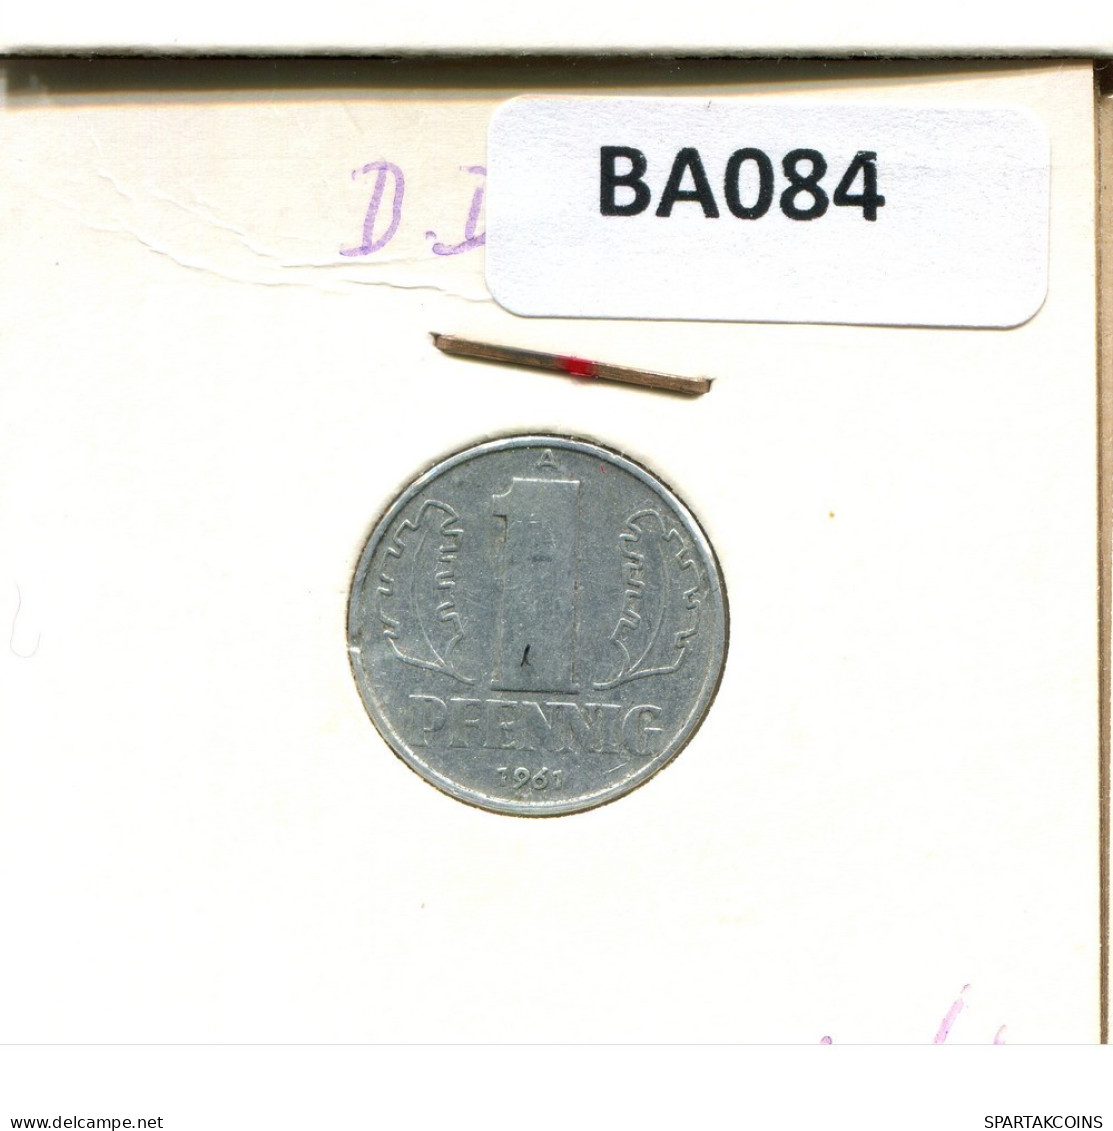 1 PFENNIG 1961 A DDR EAST ALEMANIA Moneda GERMANY #BA084.E.A - 1 Pfennig